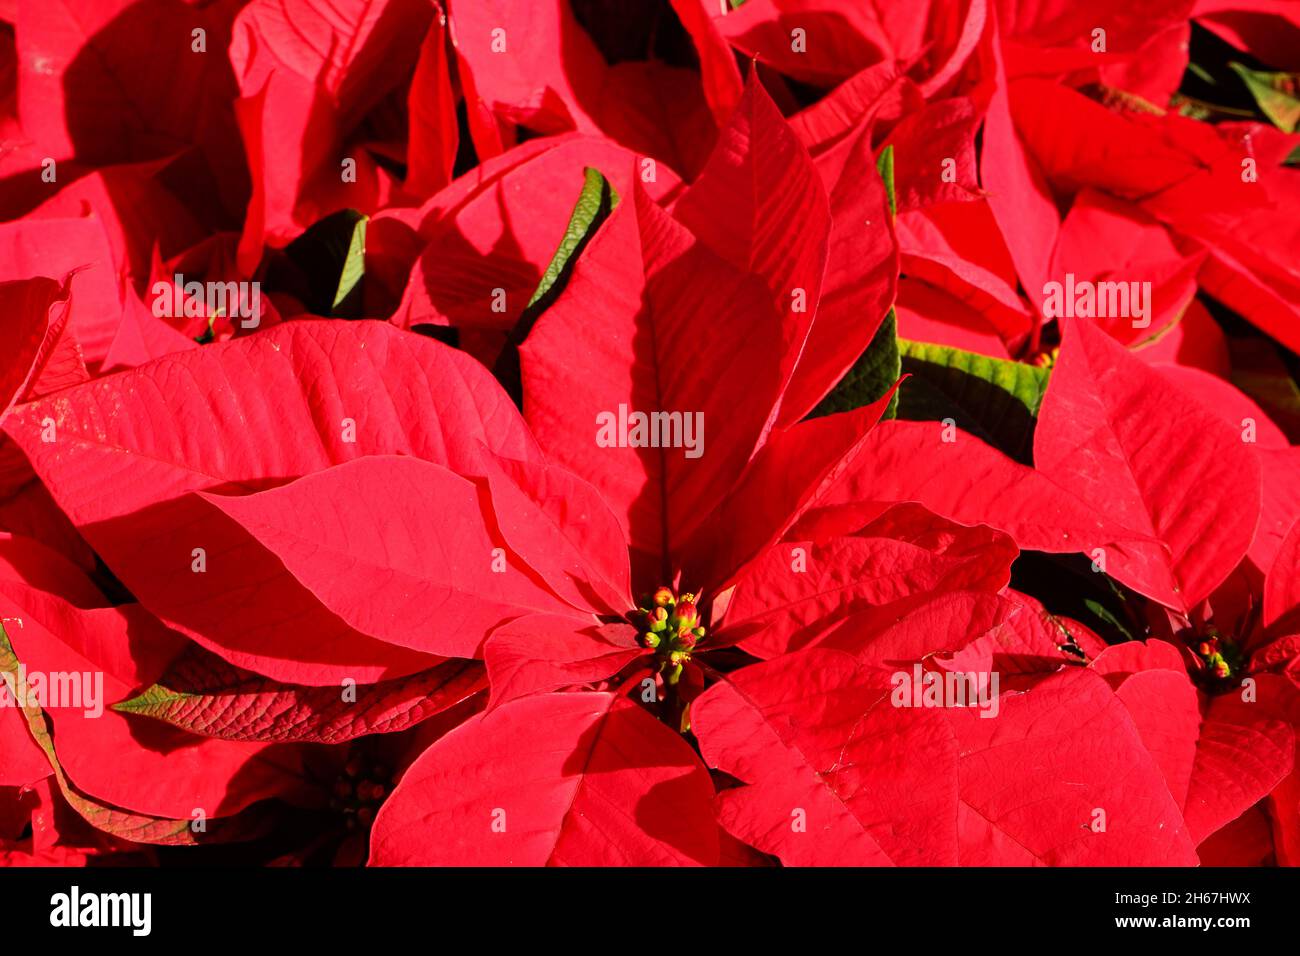 poinsettia flower: Christmas flower from the mediterrainean region Stock Photo